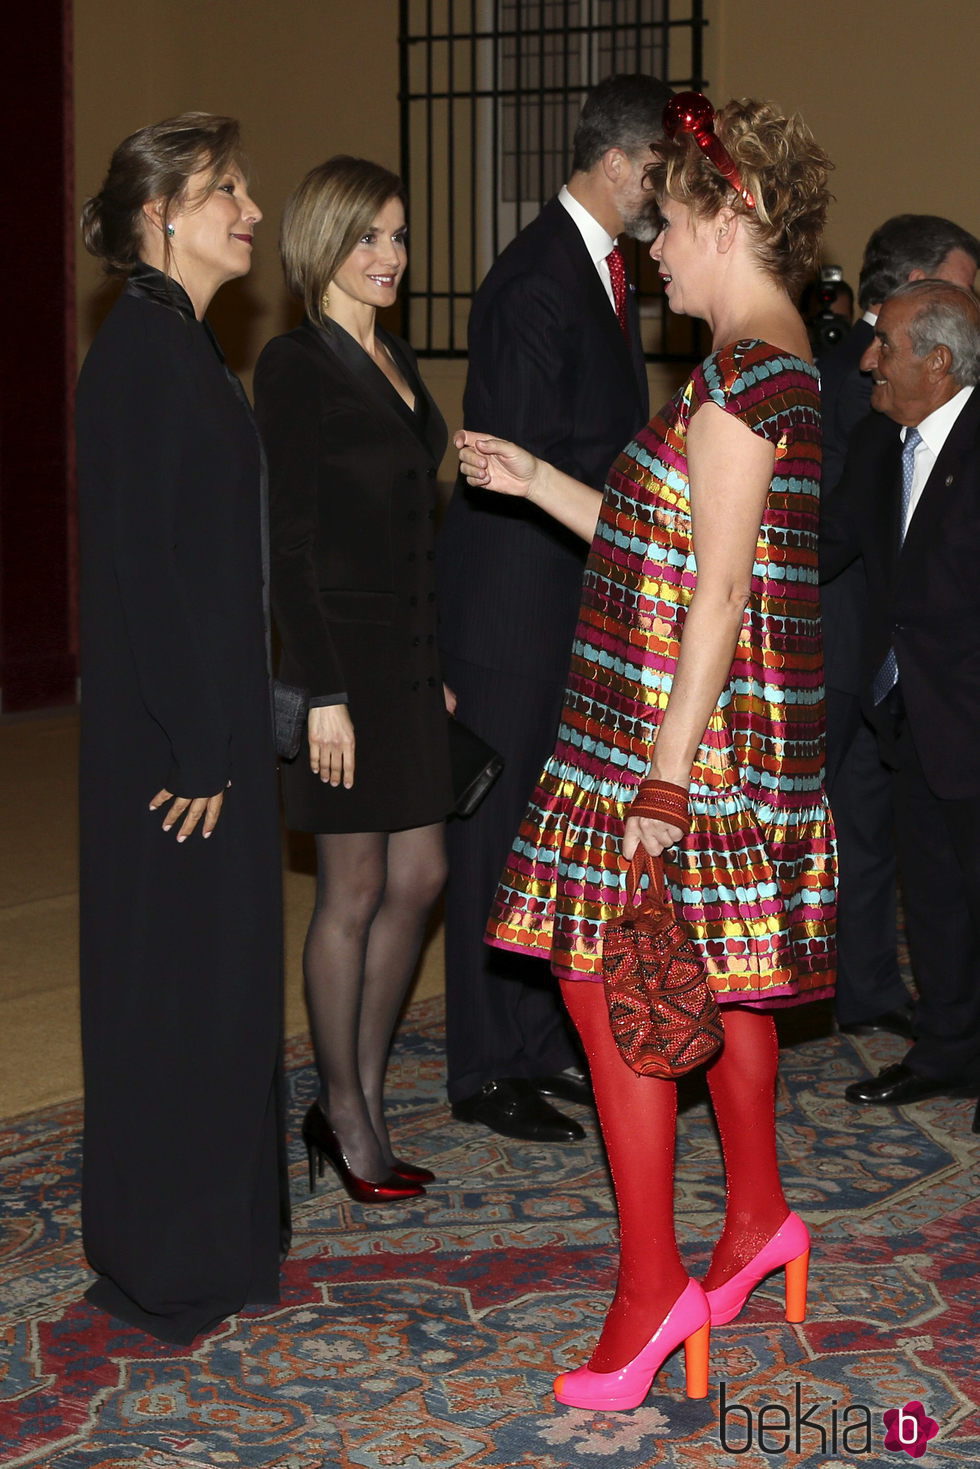 Ágatha Ruiz de la Prada en la cena del presidente de Colombia a los Reyes Felipe y Letizia